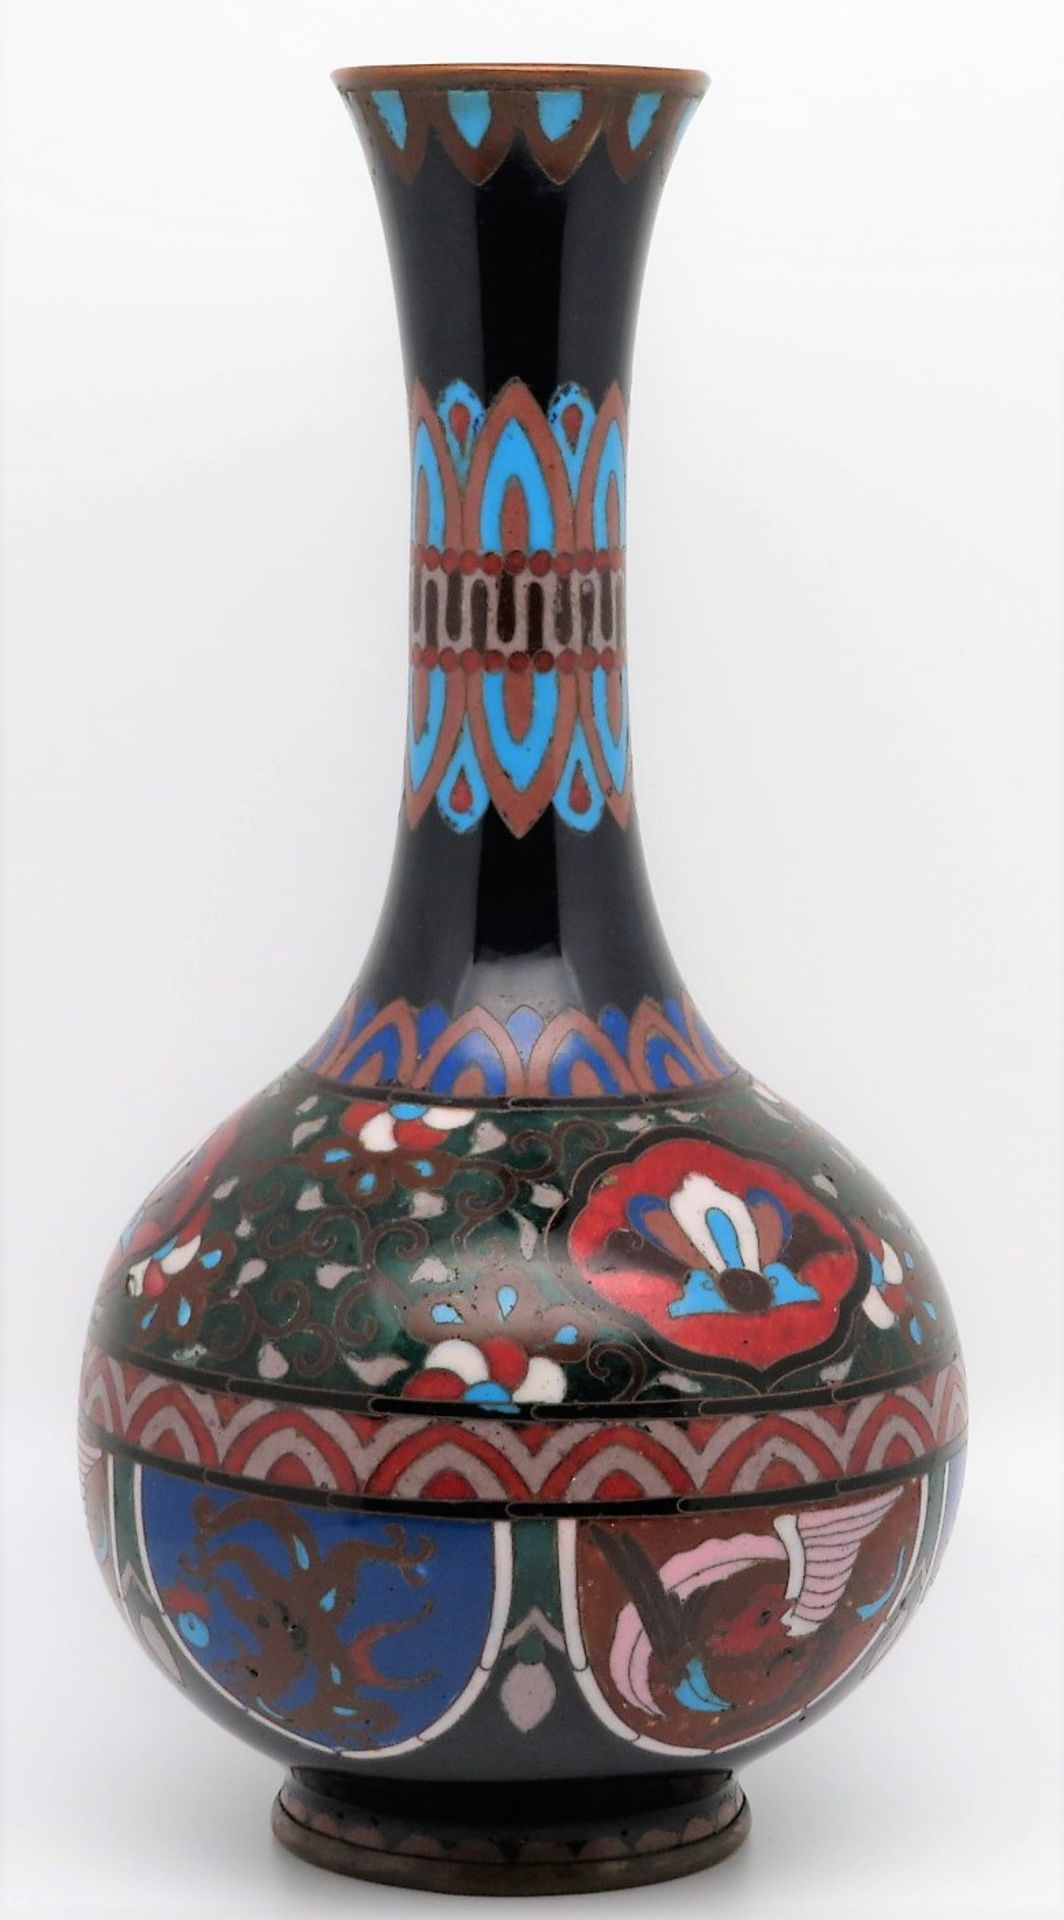 Cloisonné Vase, Japan, um 1900, farbiger Zellenschmelz, ein Minichip, h 24 cm, d 12 cm. - Image 2 of 3